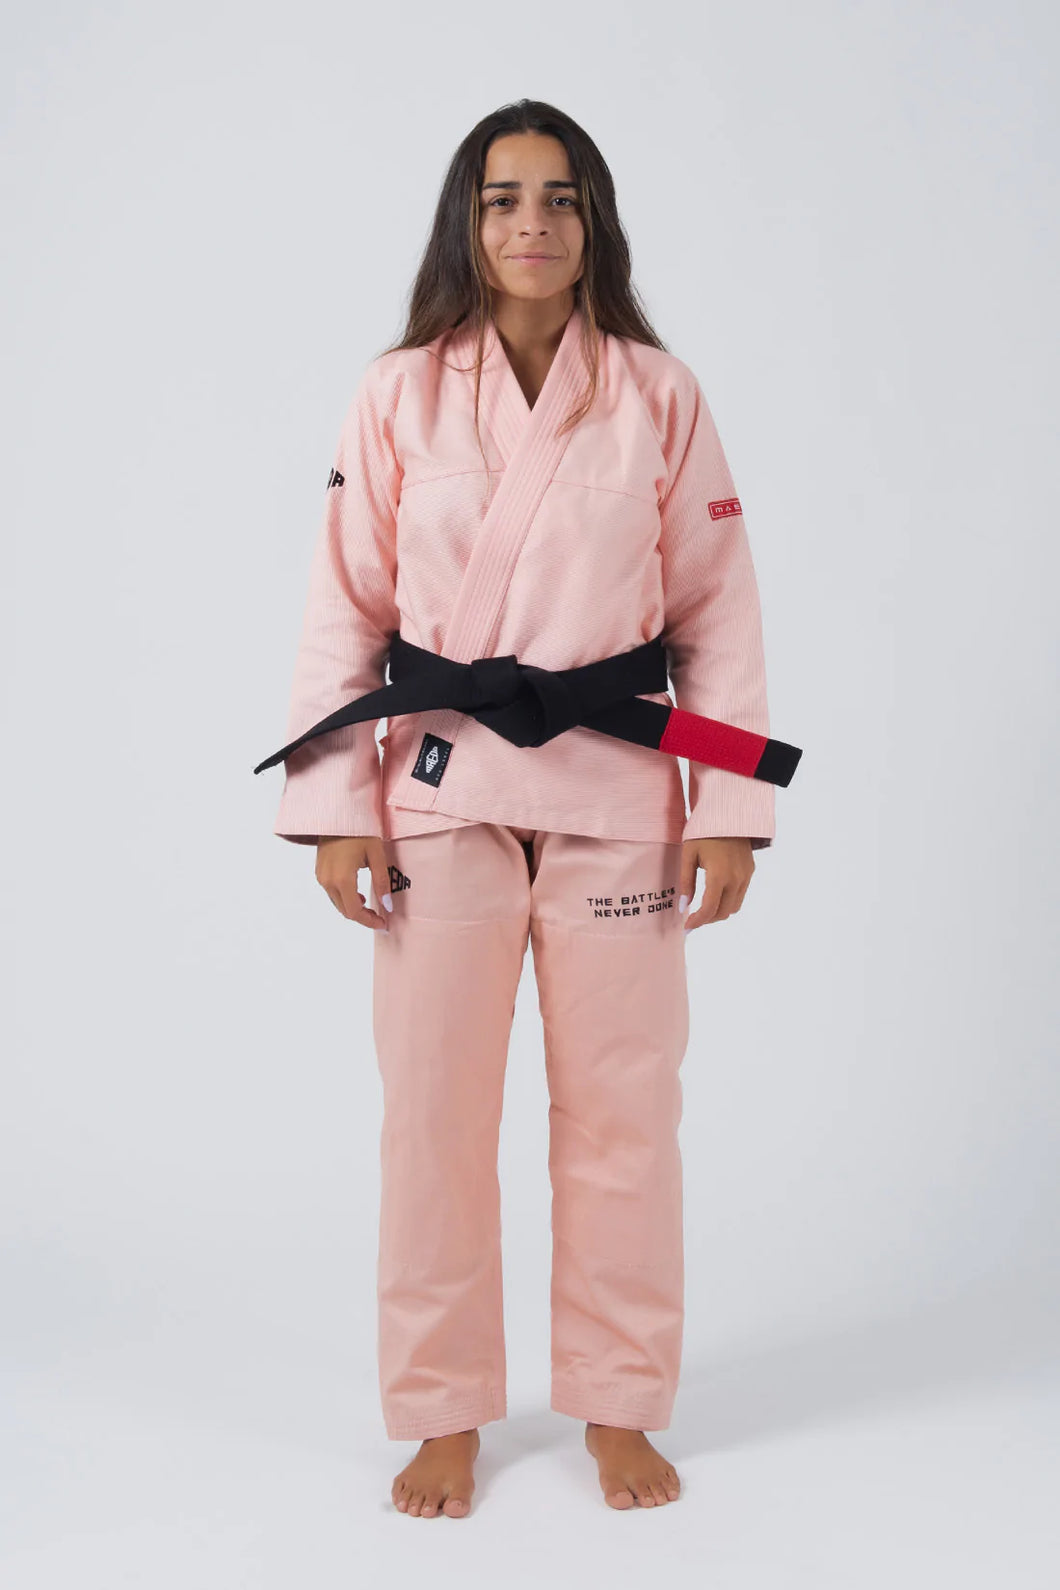 Kimono BJJ (GI) Maeda Red Label 3.0 Pfirsich für Frauen - Weißer Gürtel enthalten